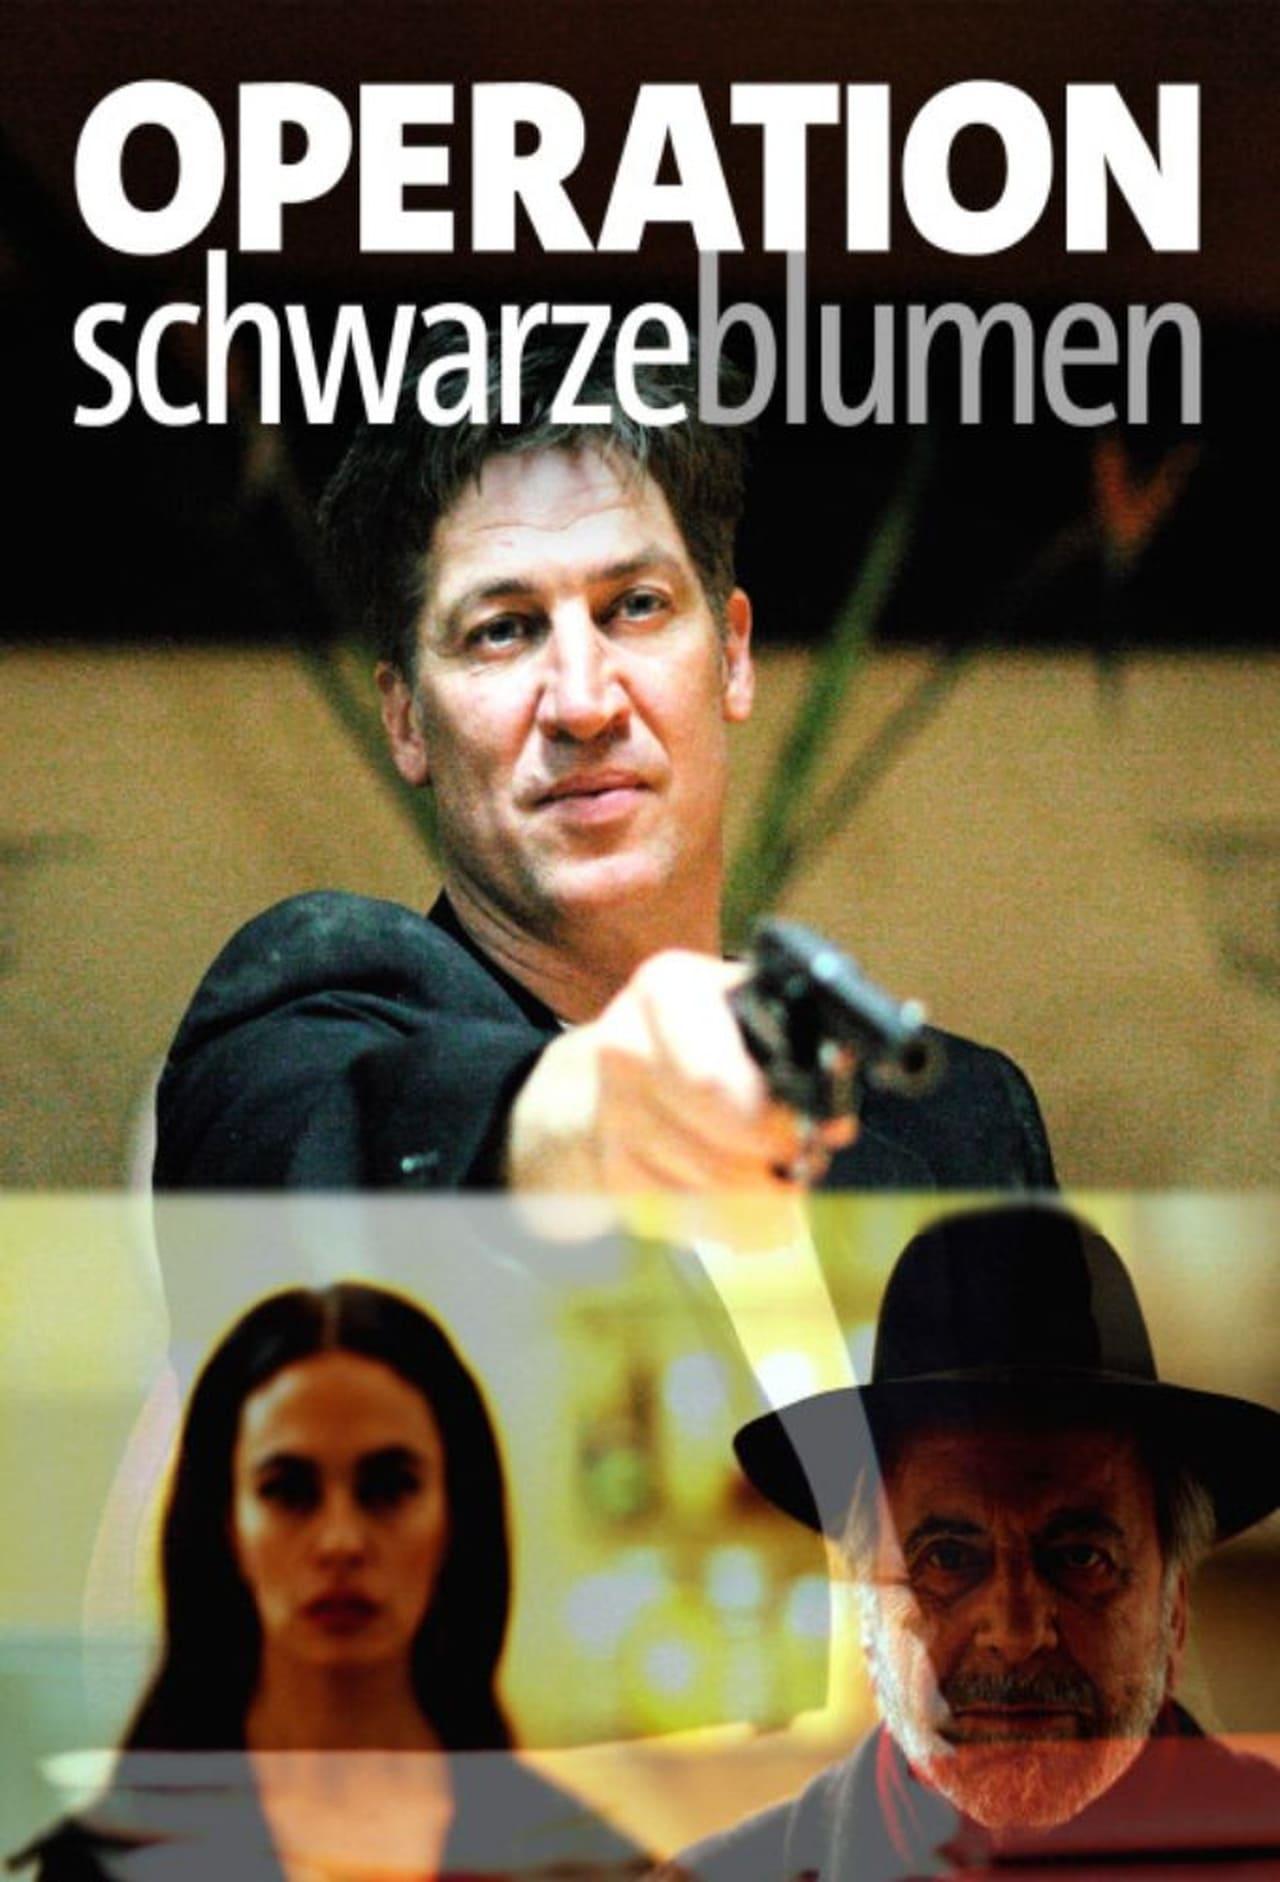 Operation Schwarze Blumen poster